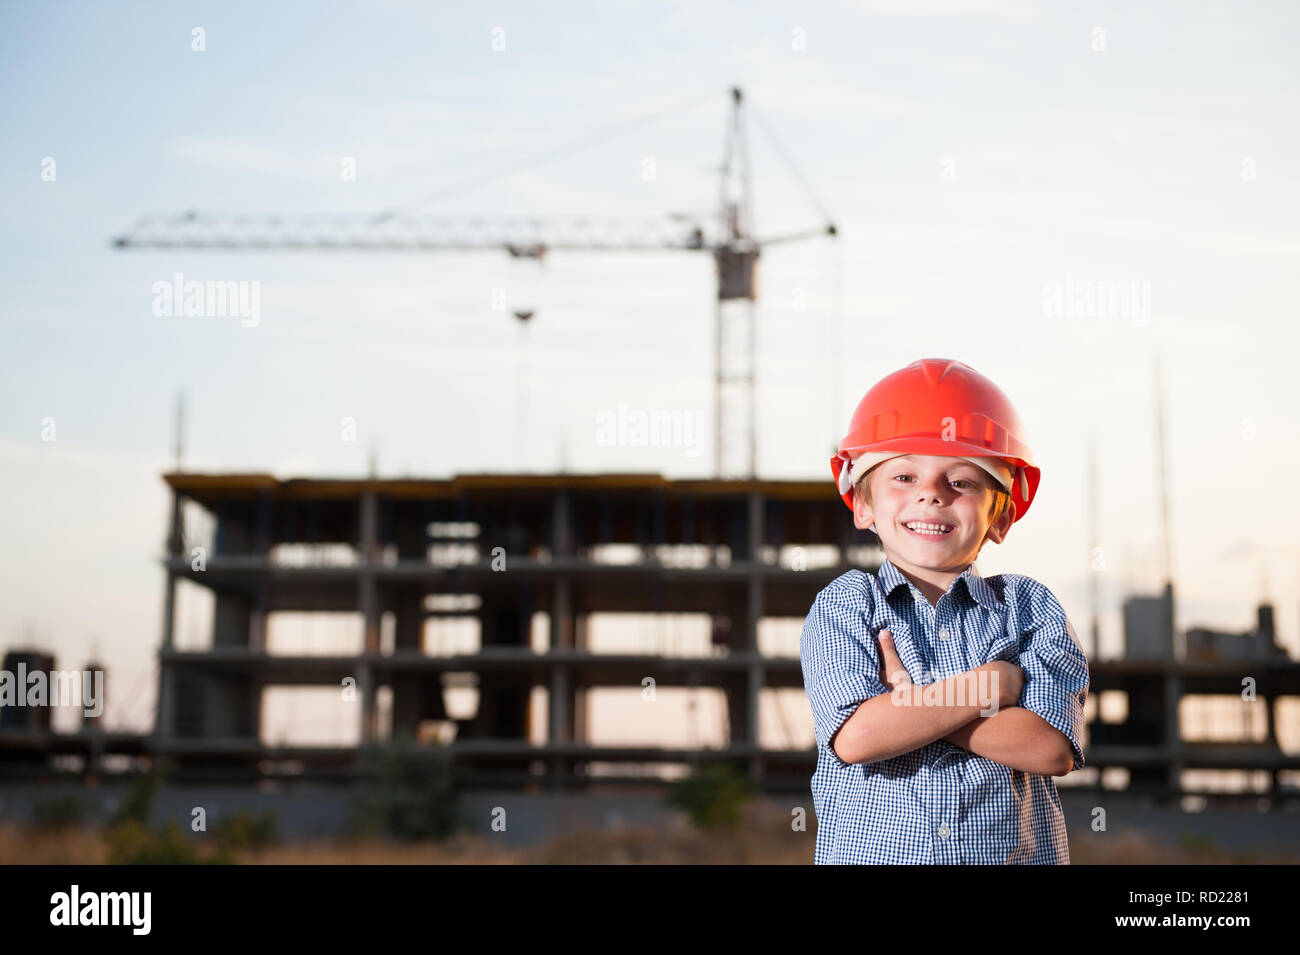 Stattliche glücklich lächelnde Kind in orange Helm und blaue T-Shirt auf der Baustelle mit Kran Stockfoto